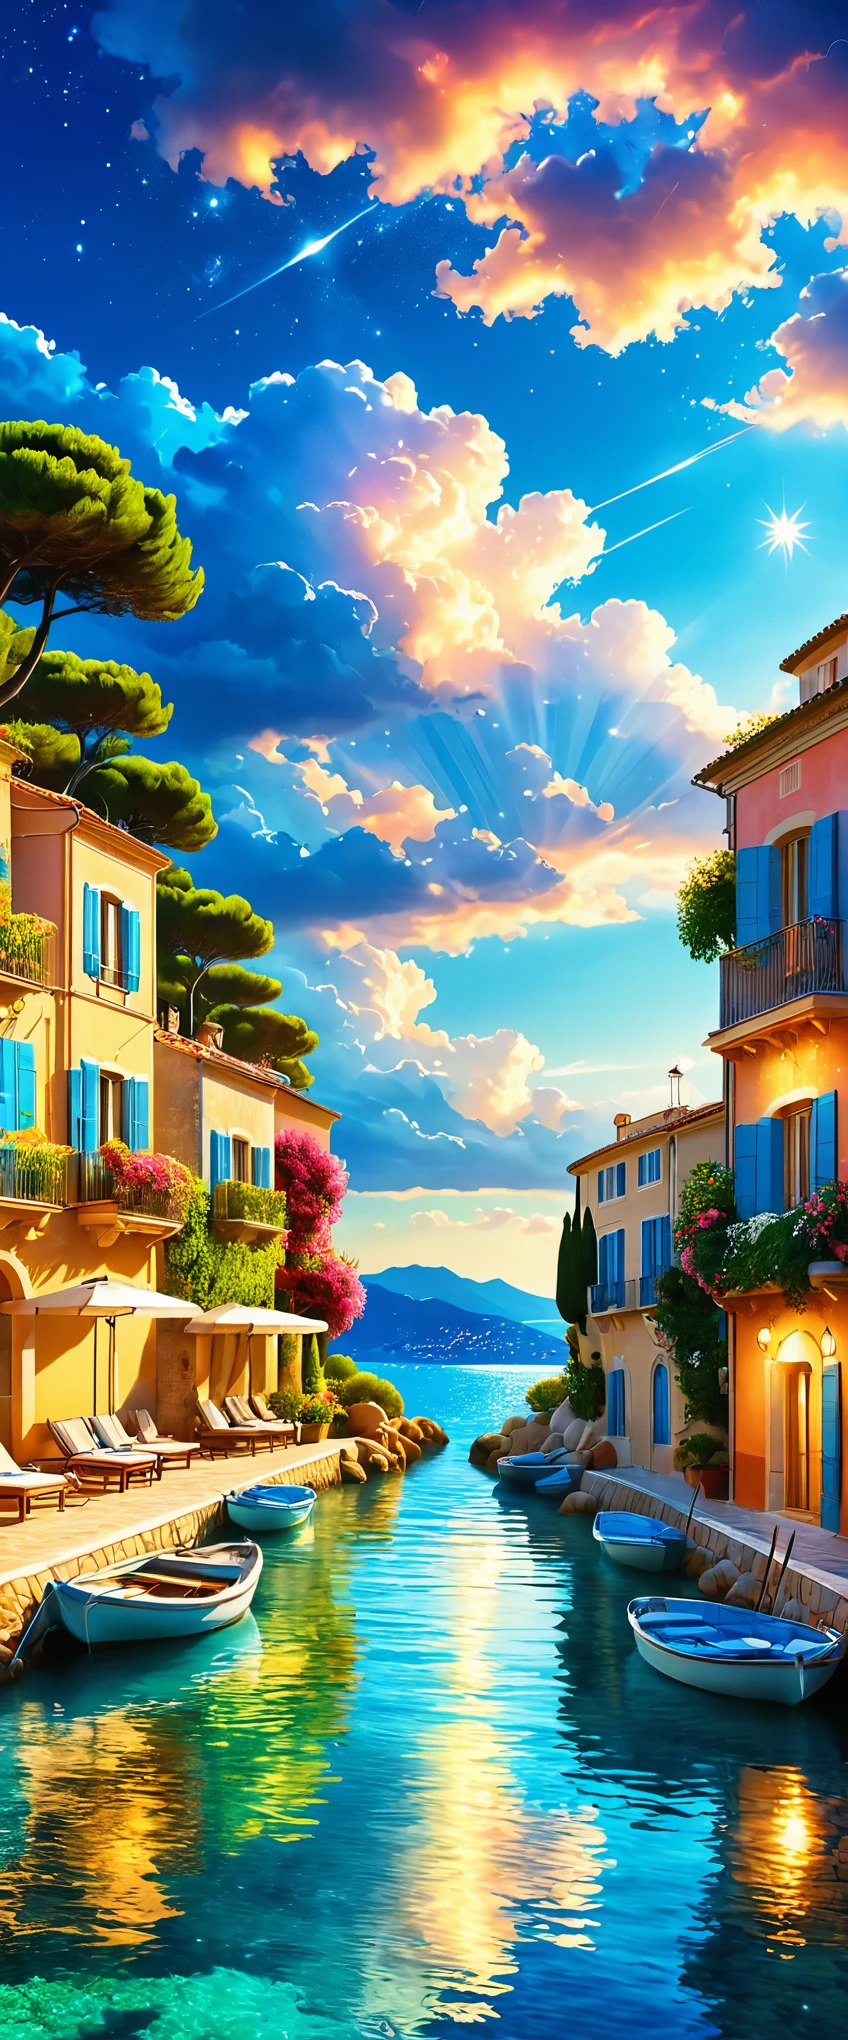 Рейтинг d&#39;лазурный:юг Франции:Береговая линия, известная как живописный курорт,Курортные пейзажи,праздничный день,美しい風景фотография,Фантазия,мечтательный,красивое море,高品質でзамечательный家具:дизайнерская мебель,Красивое небо простирается,сказочный,лето,облако,голубое небо,Морской синий,замечательный景色が広がる,Роскошные курорты,Экстравагантное пространство,Мягкая крышка для рта,В окружении богатой природы,Наибольшийの時間をあなたに,Наибольший品質,фотография,структурно правильный,идеальная композиция,広告用に撮影されたфотография,красивый свет и тень,Photographed by a professional фотографияer,Наибольшийのリゾート地に選ばれた,насыщенные цвета,Используйте красочные заклинания,подробный,замечательный,замечательный,юг Франции,световые эффекты,блеск,отражение,ночь,ночь空,звезда,Наибольший